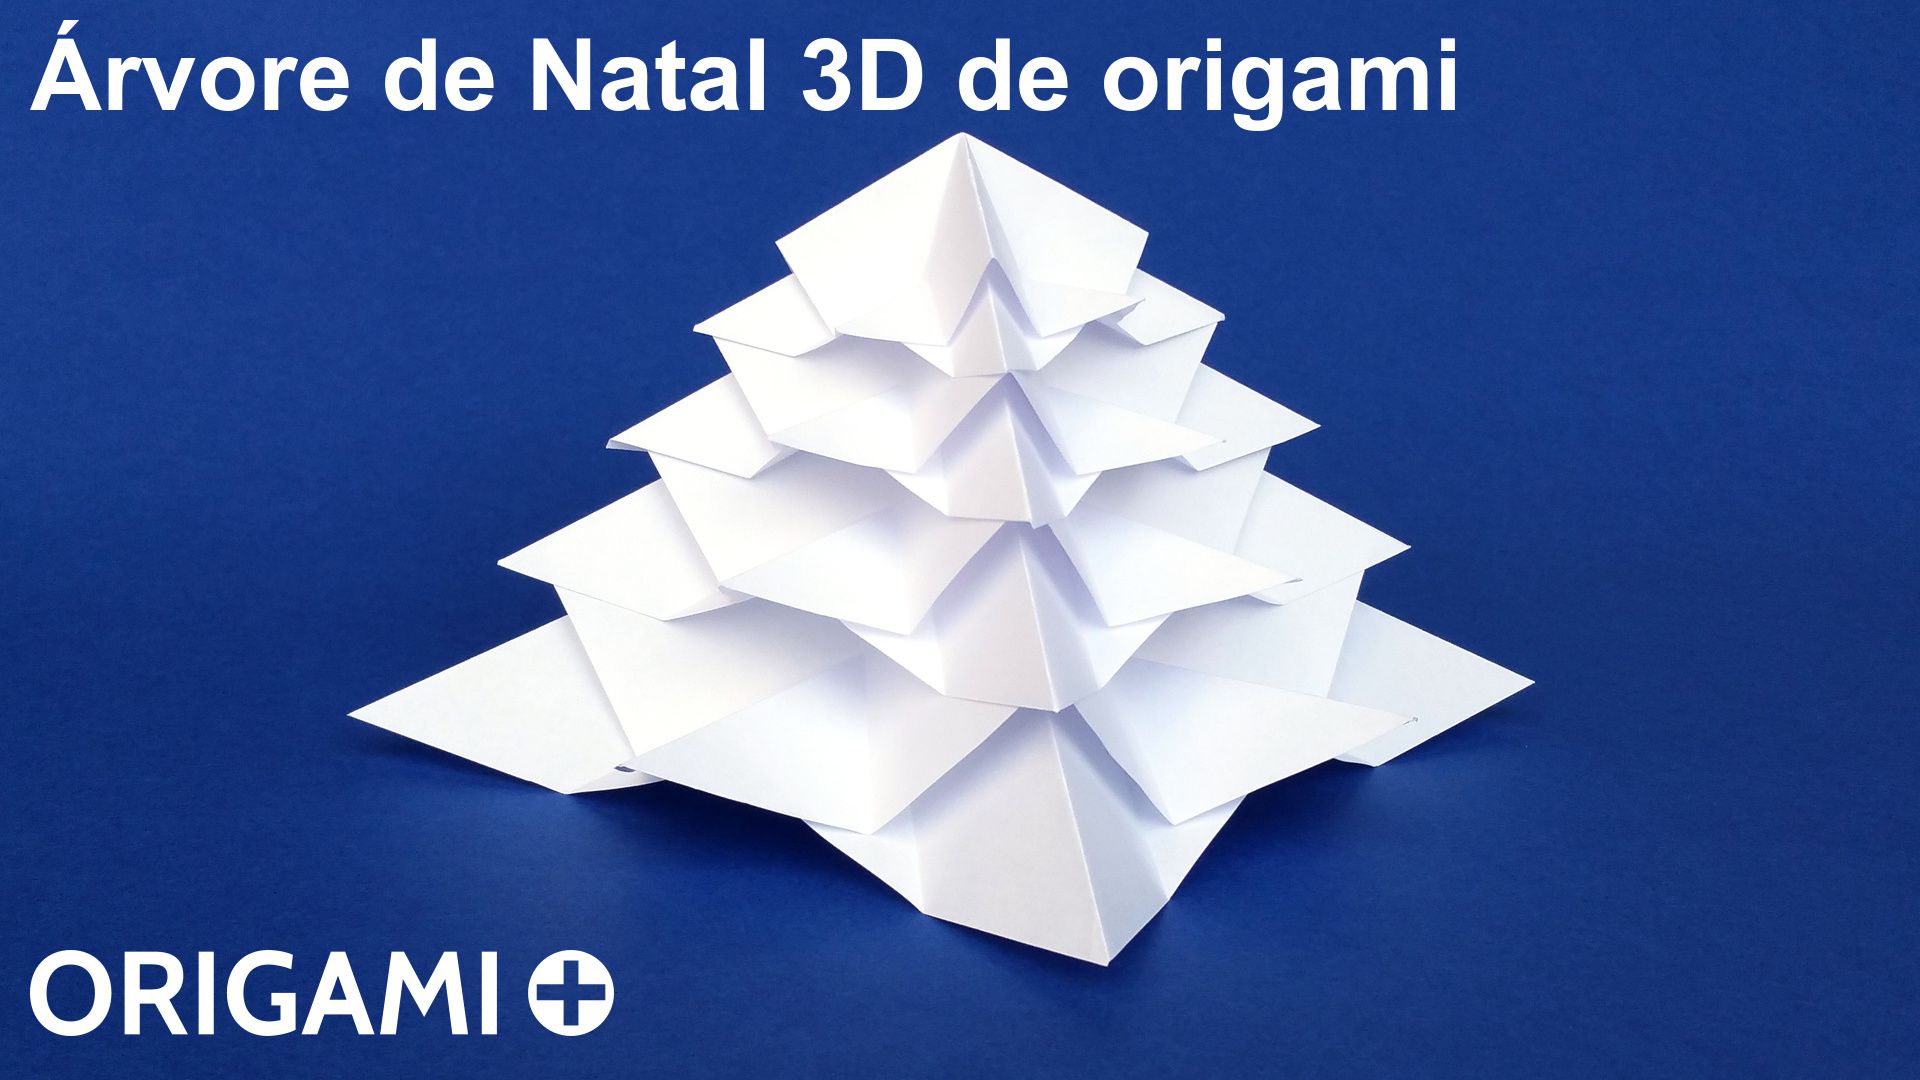 Árvore de Natal 3D de origami